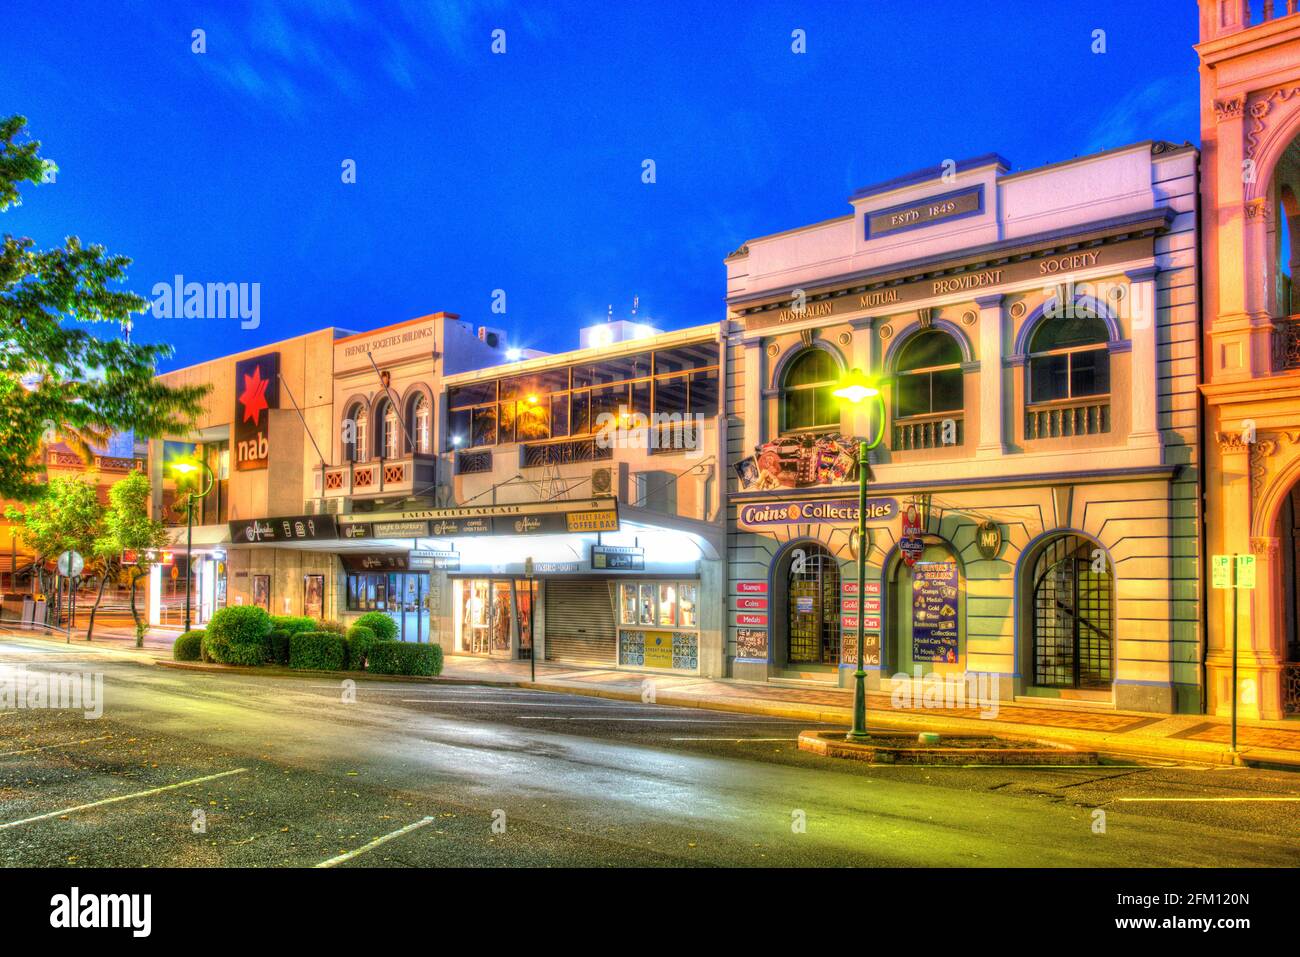 Edificios históricos a lo largo de la calle Bourbong Bundaberg Queensland Australia Foto de stock